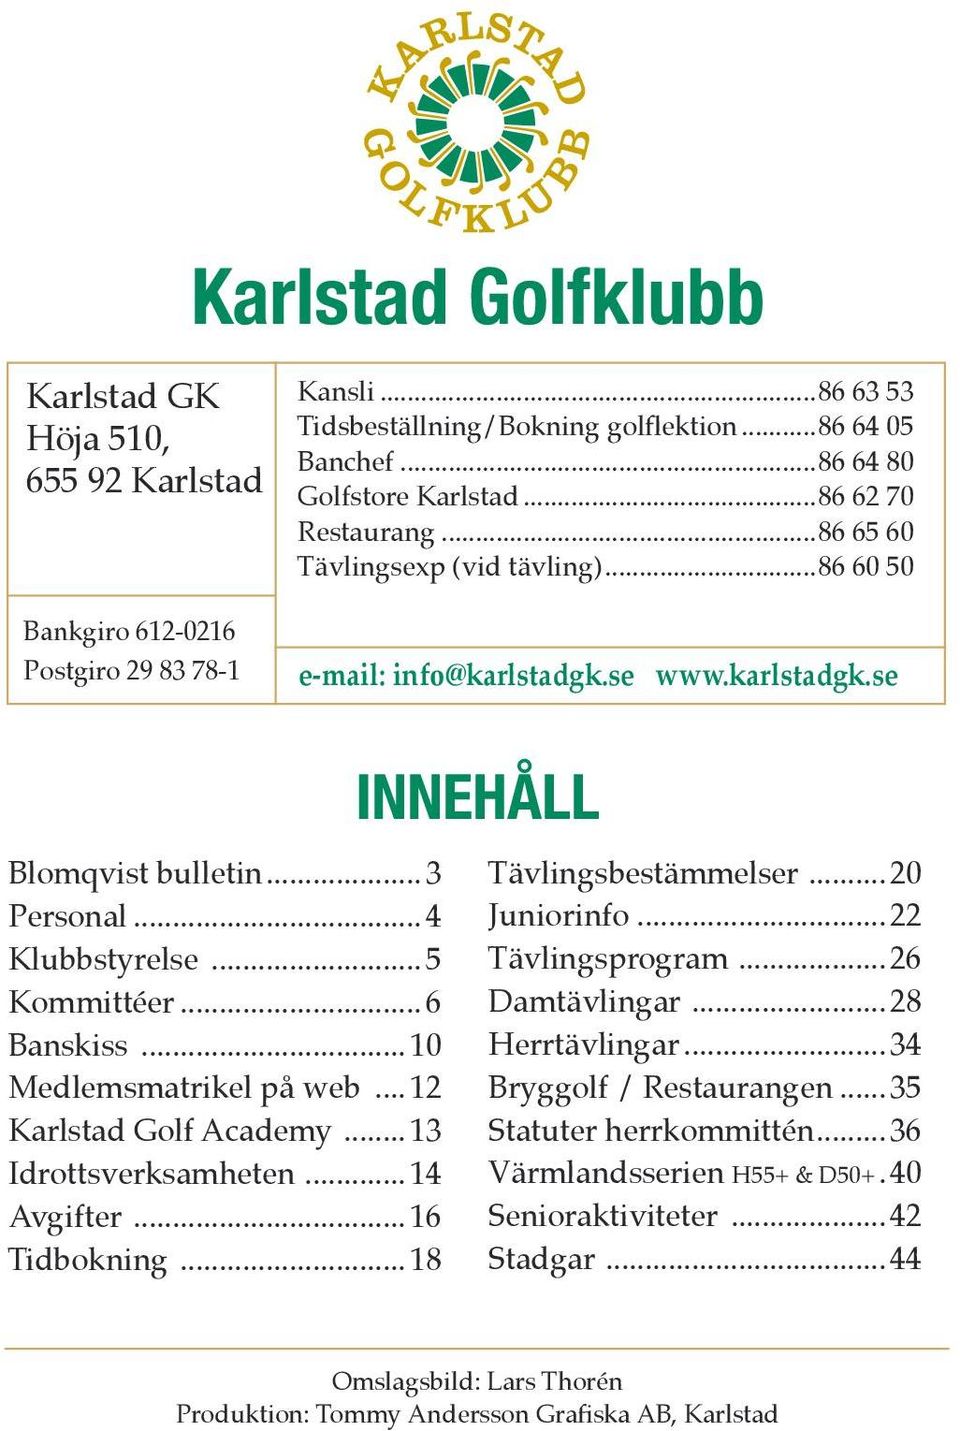 .. 6 Banskiss... 10 Medlemsmatrikel på web... 12 Karlstad Golf Academy... 13 Idrottsverksamheten... 14 Avgifter... 16 Tidbokning... 18 Tävlingsbestämmelser... 20 Juniorinfo... 22 Tävlingsprogram.